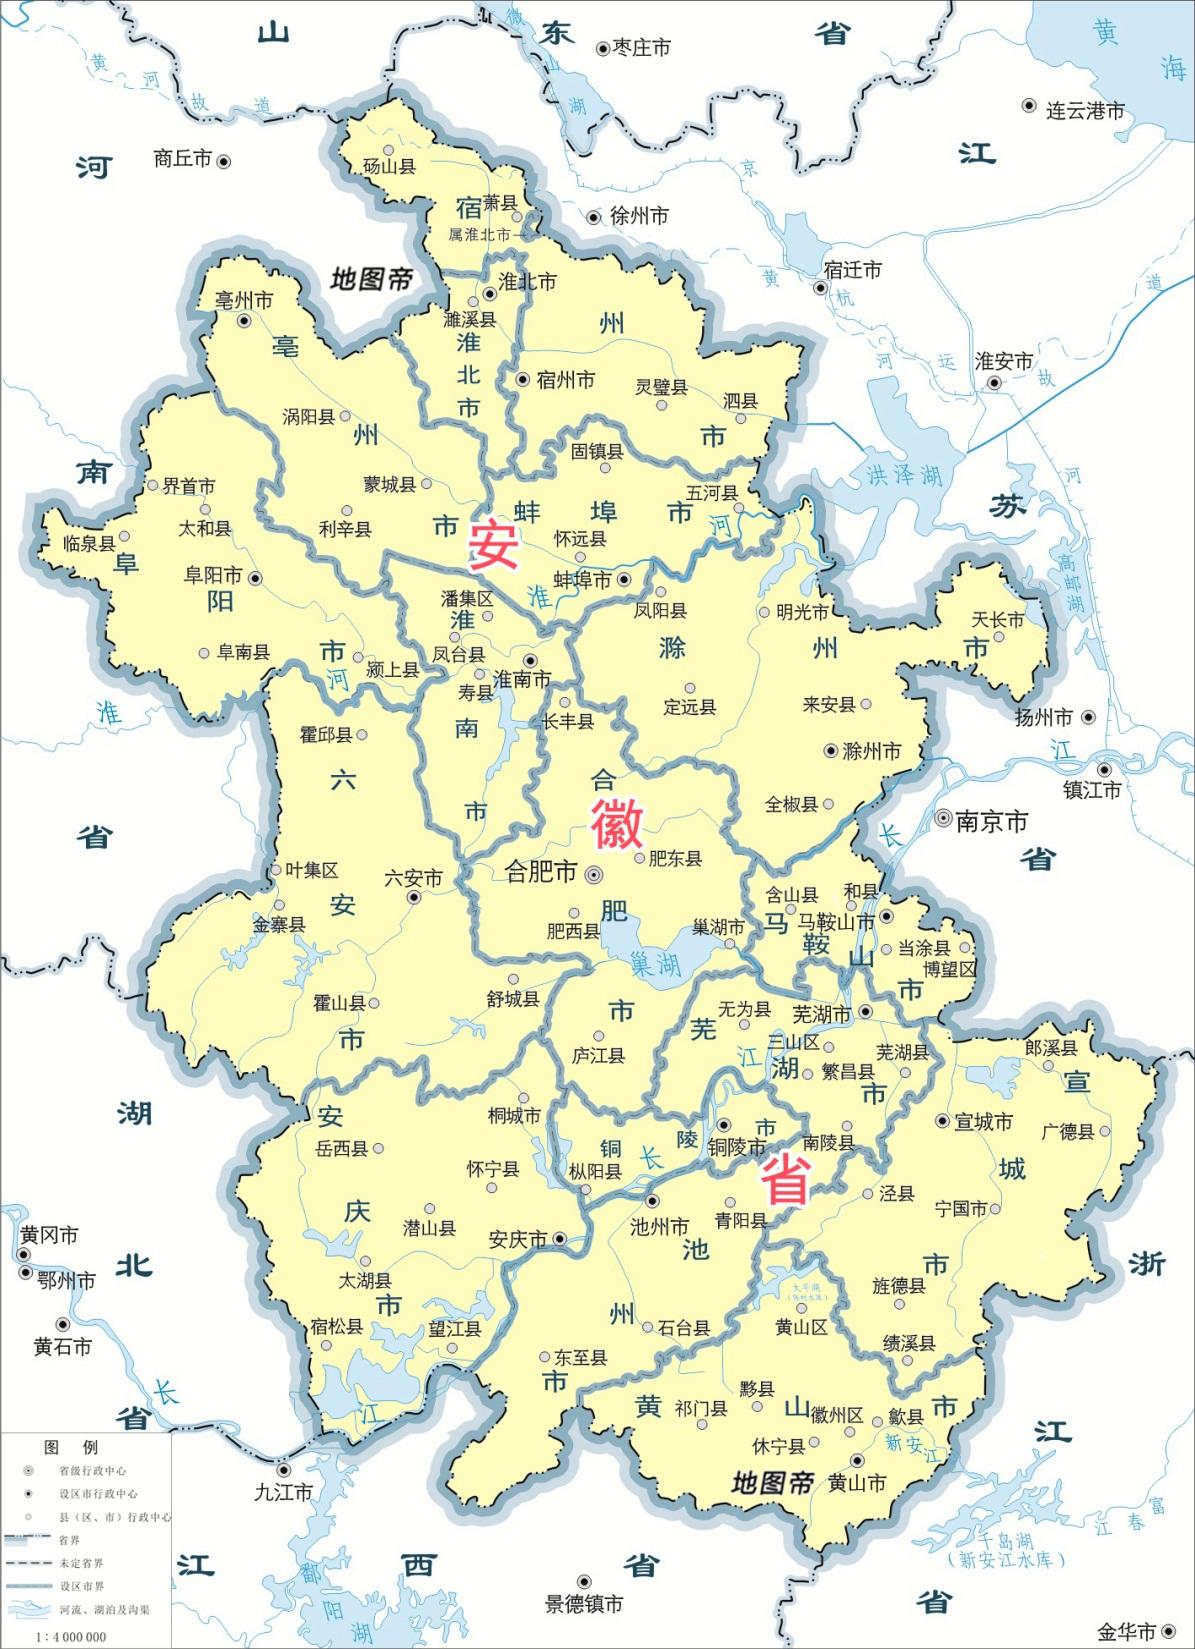 历史 正文  萧县县城距离徐州市区不过十几公里,萧县要办伏羊节的想法图片